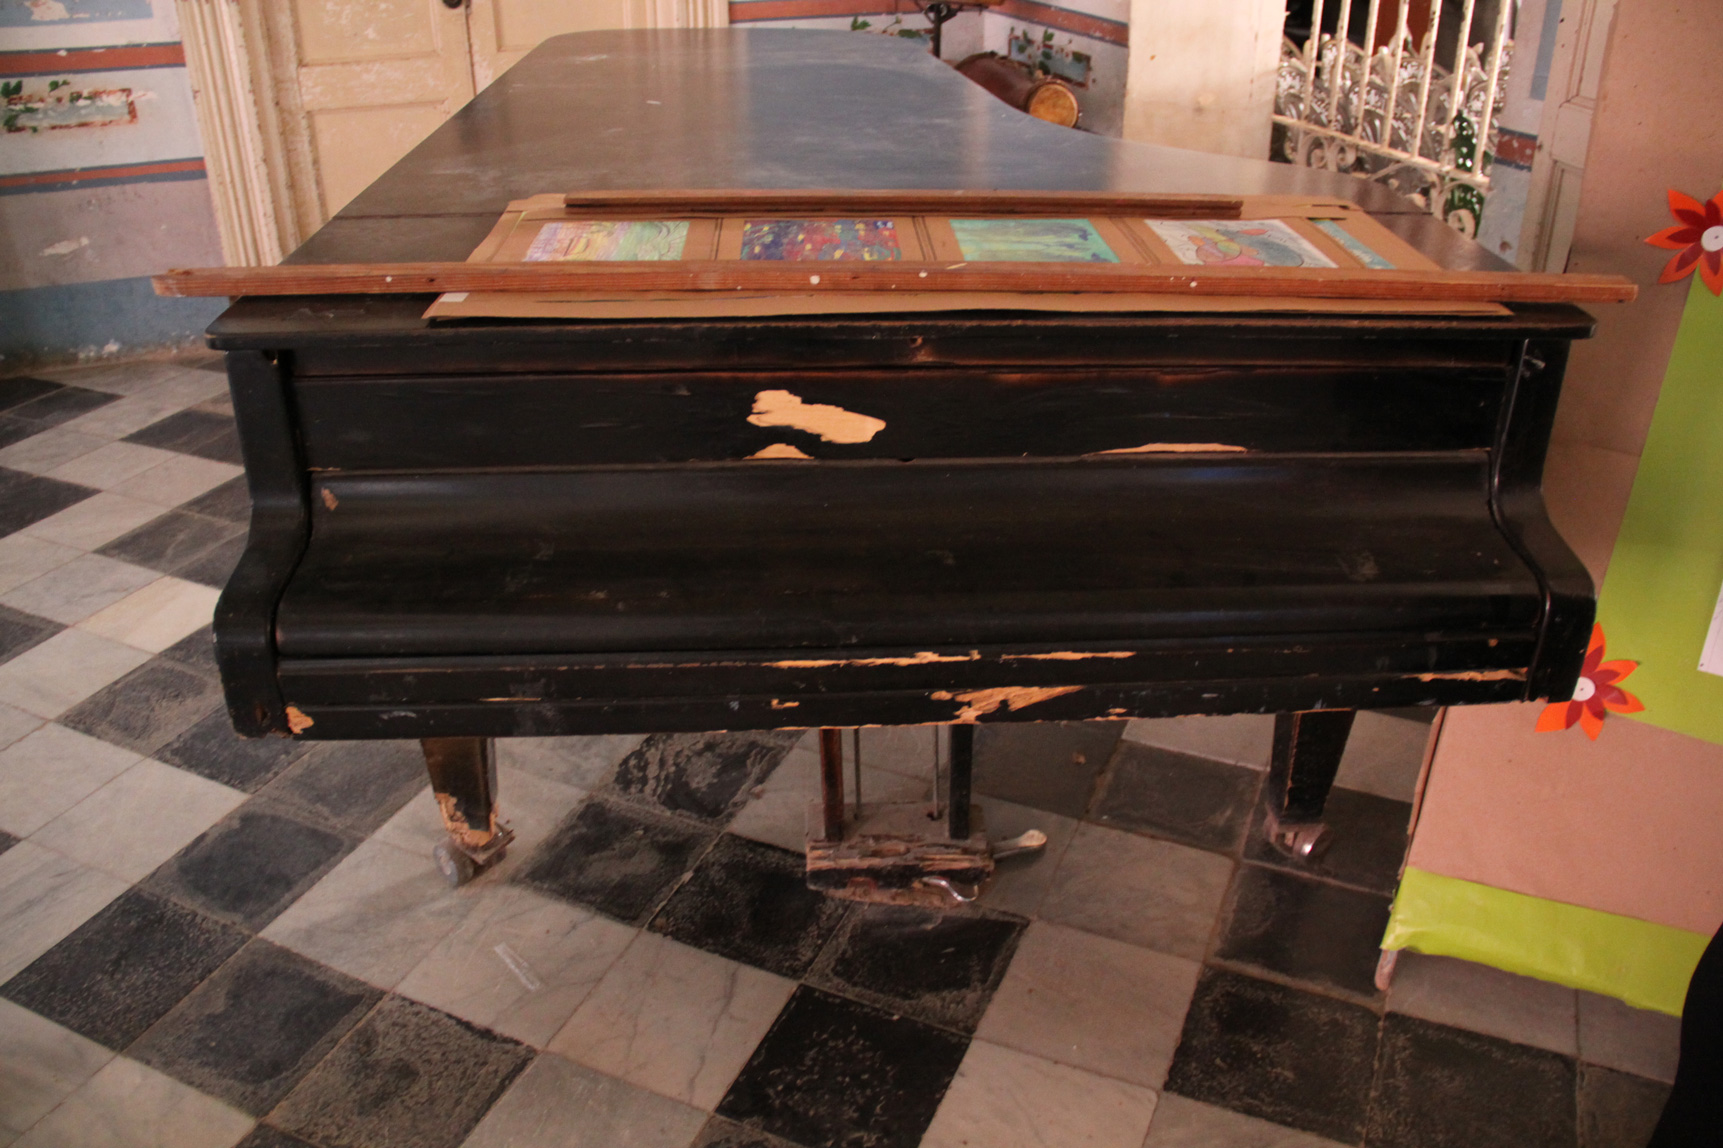 Grand piano in Trinidad, Cuba